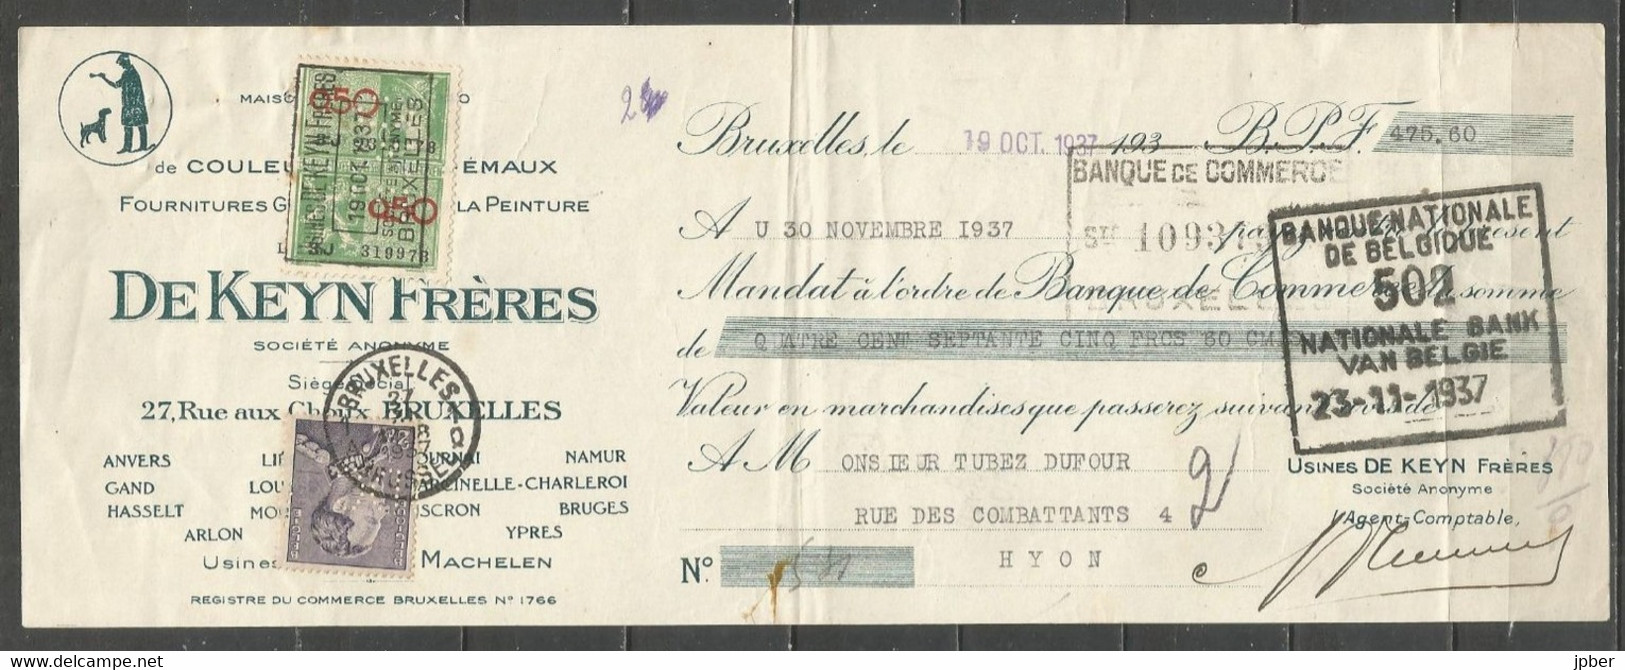 Belgique - Léopold III Poortman N°431c Perforé DC Et Timbre Fiscal Perforé DKL Sur Billet à Ordre Du 19-10-37 - 1936-1951 Poortman